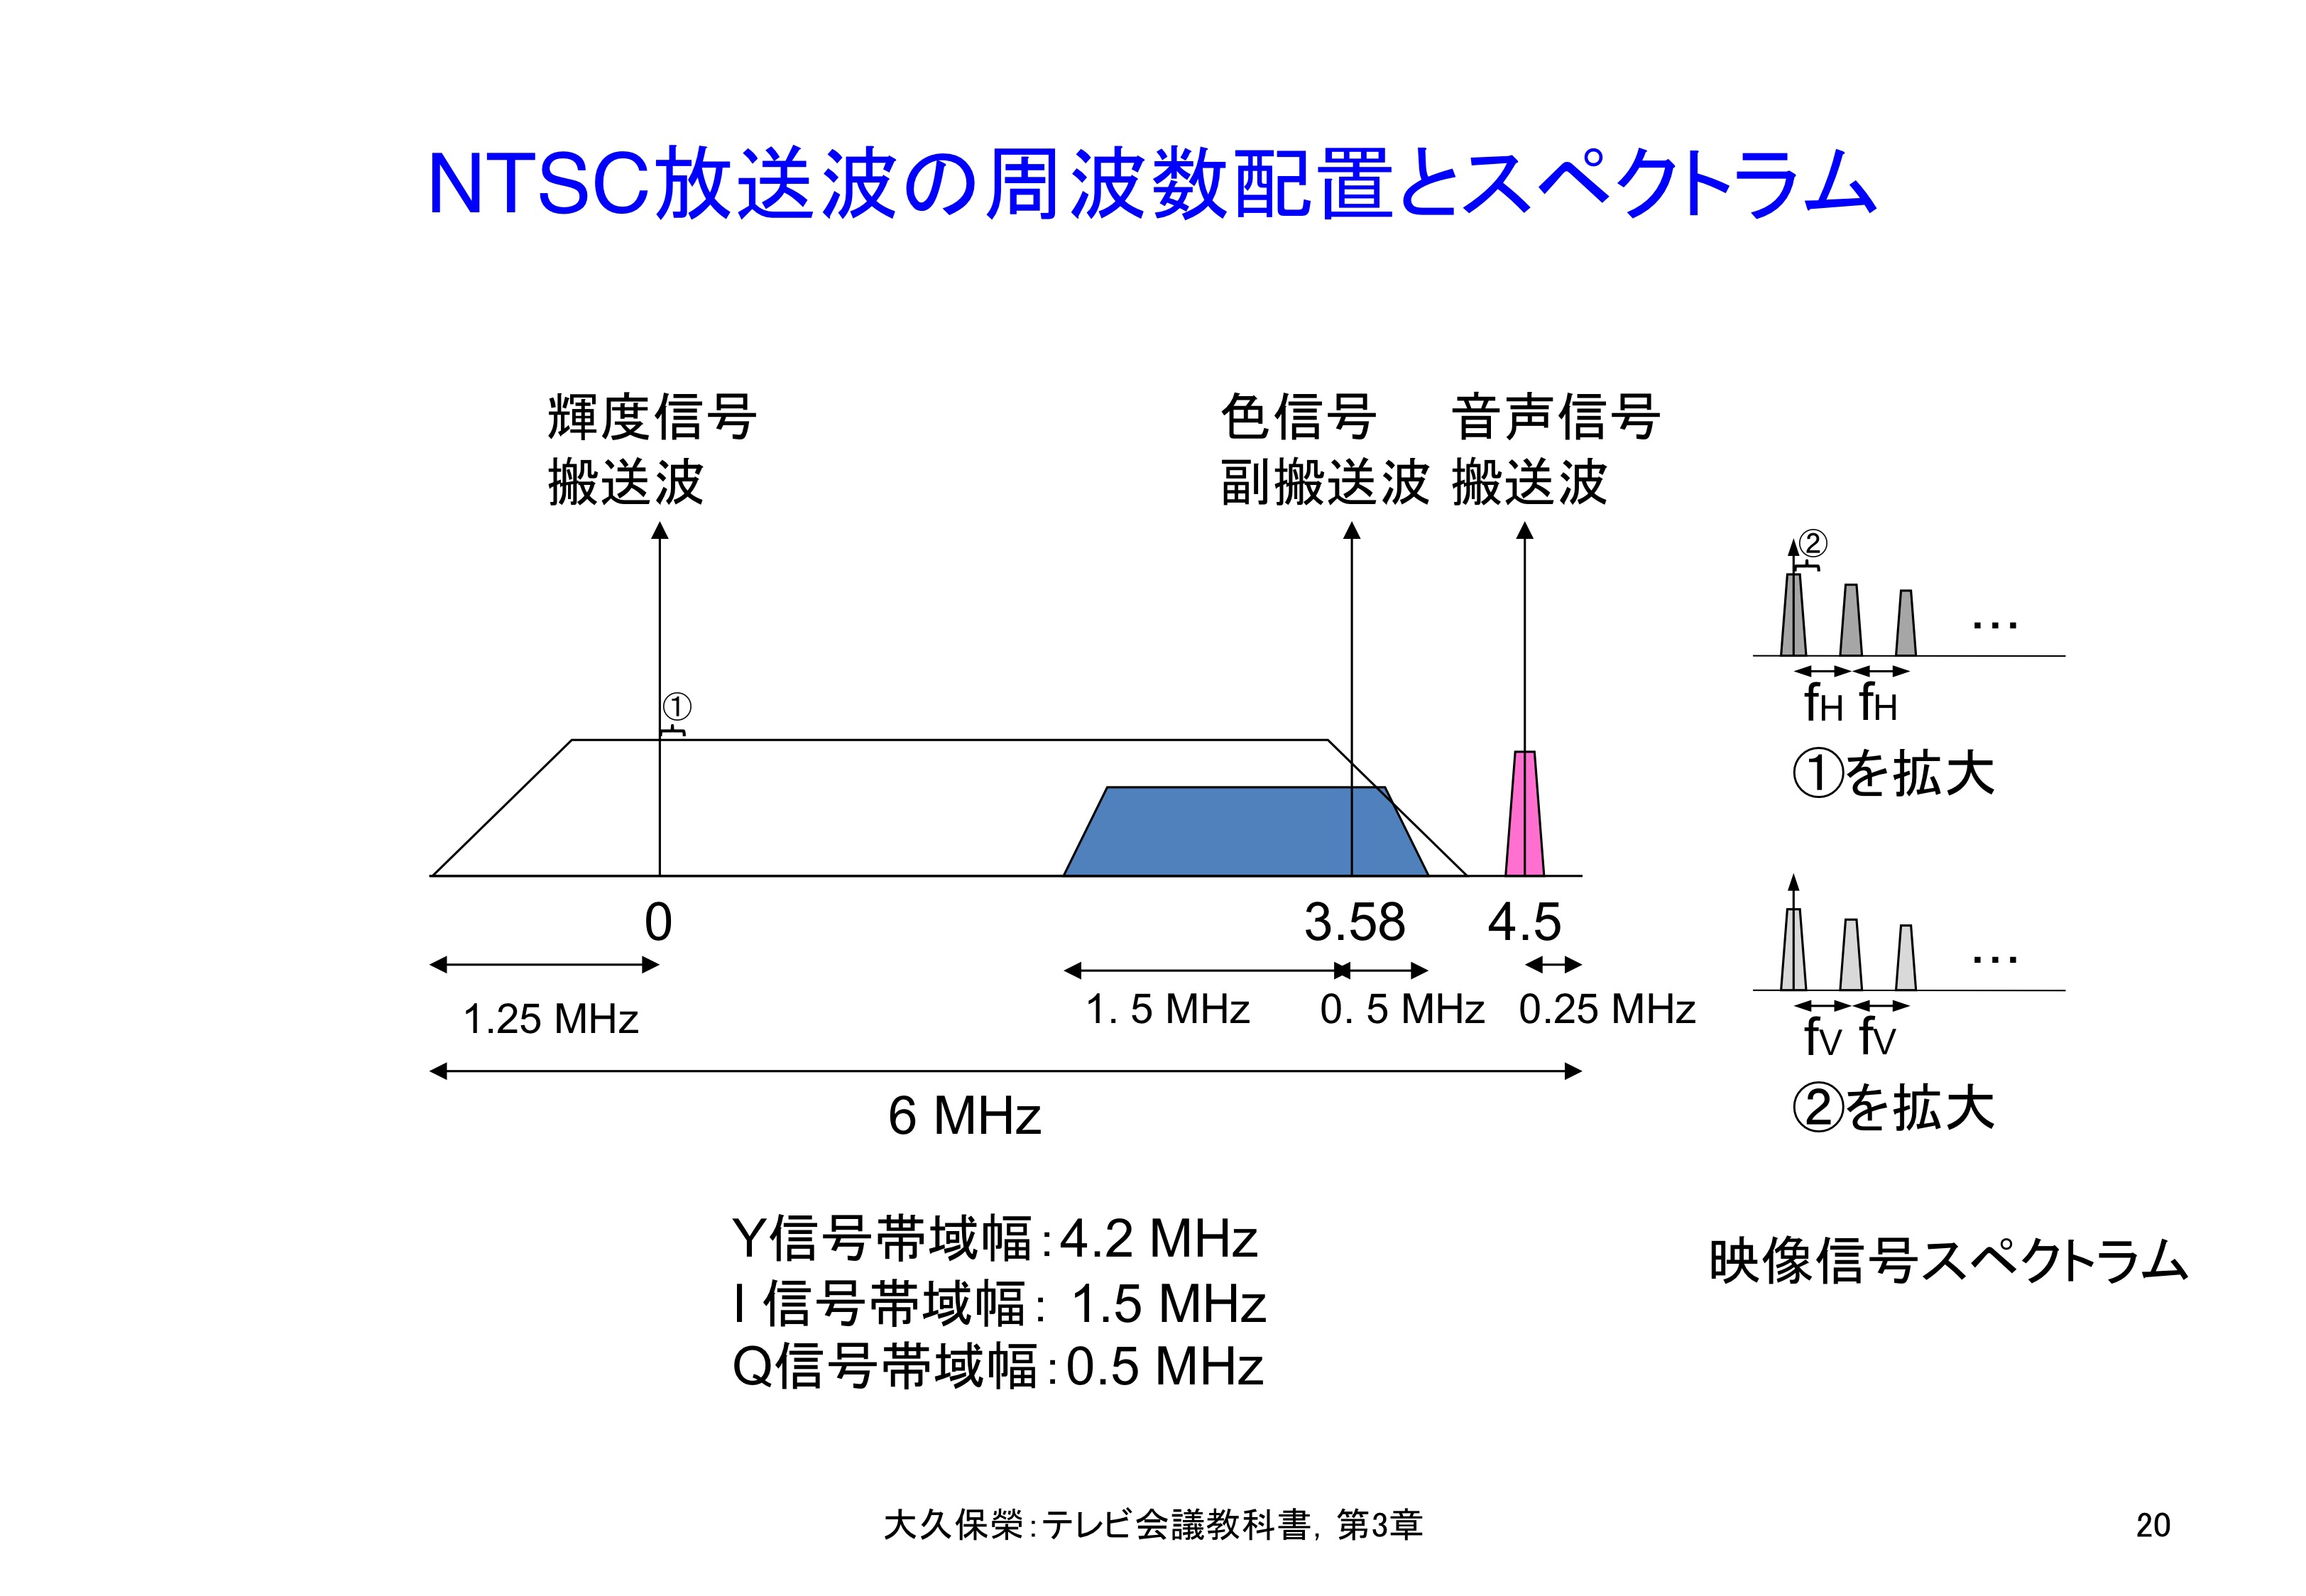 図C3-1 NTSC放送波の周波数配置